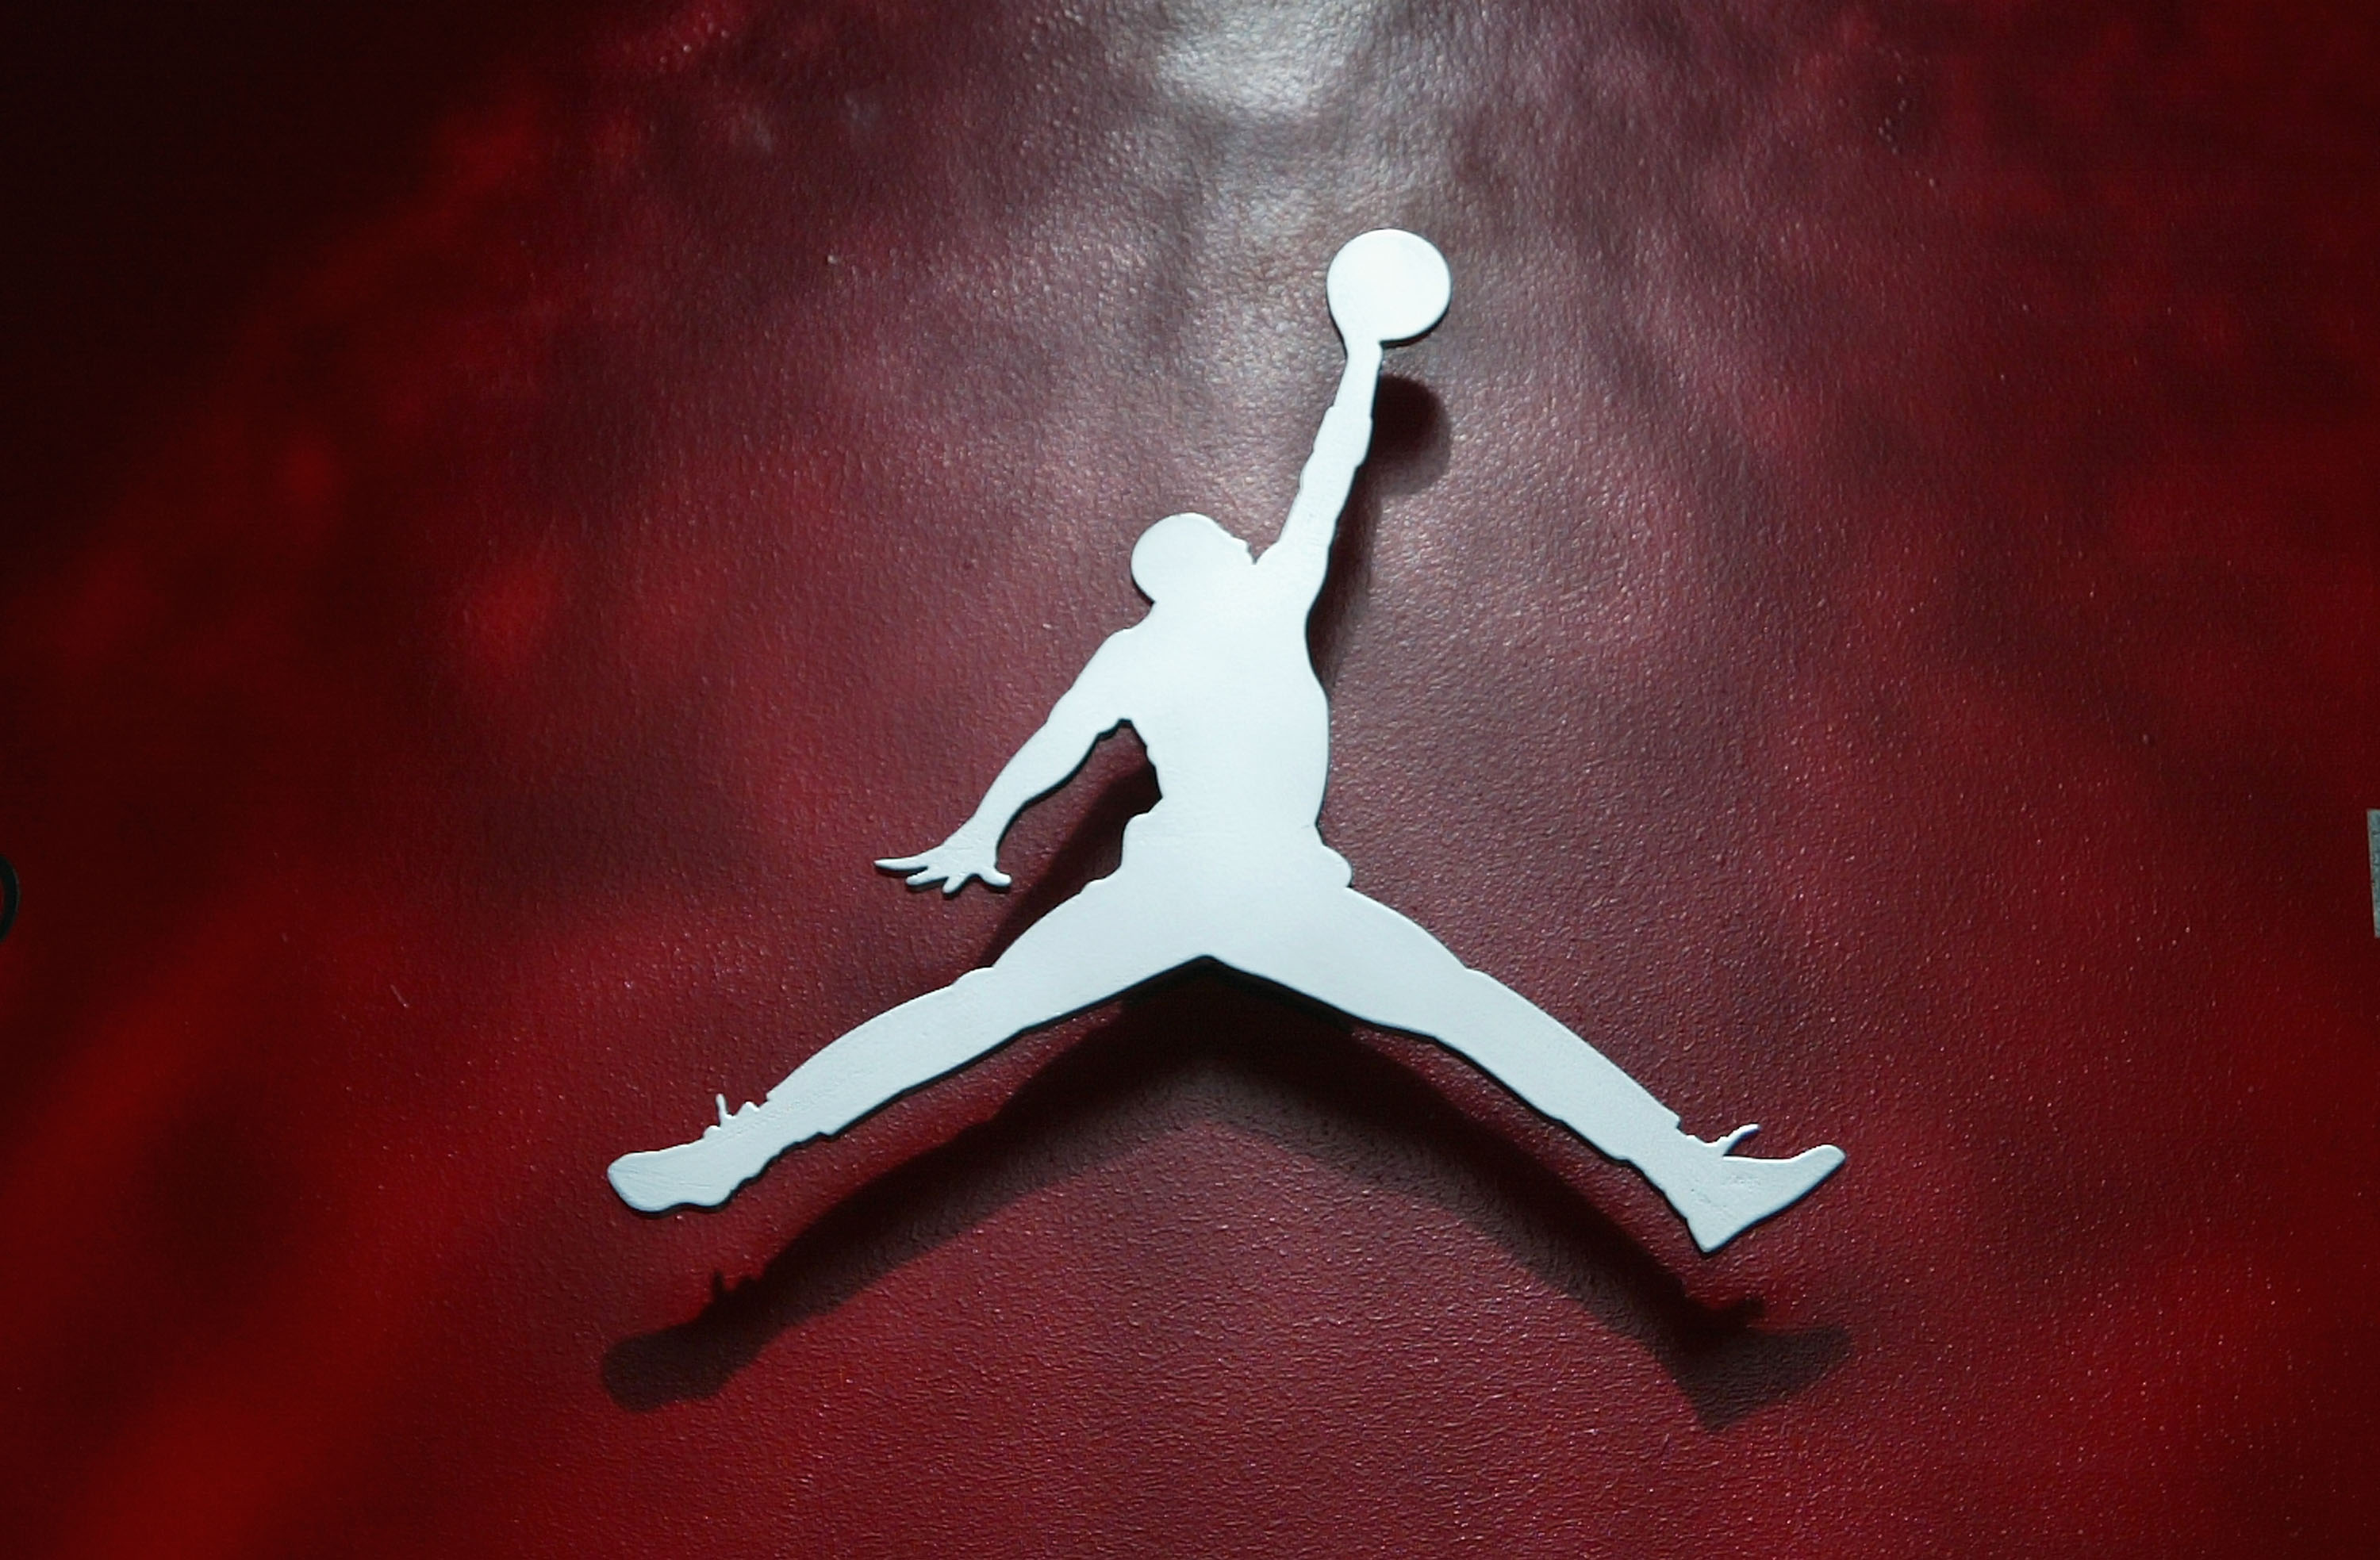 Air Jordan 1 “Satin Bred” Coming Soon: Best Look Yet